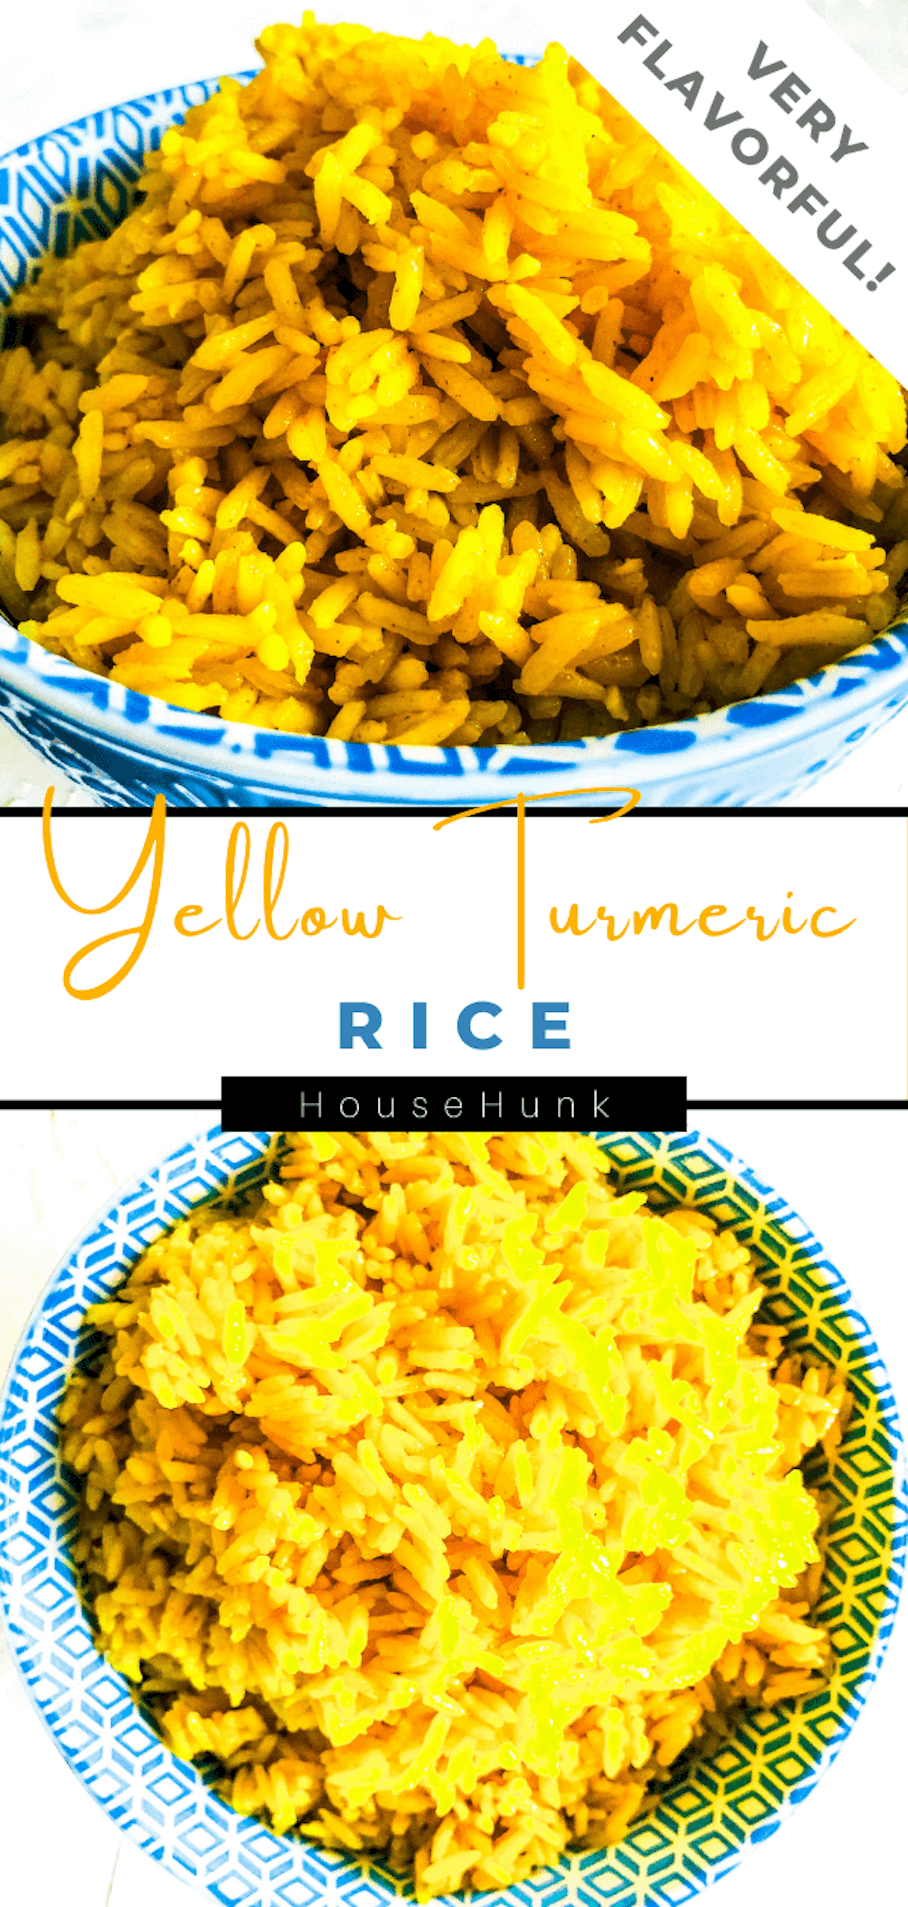 yellow-rice